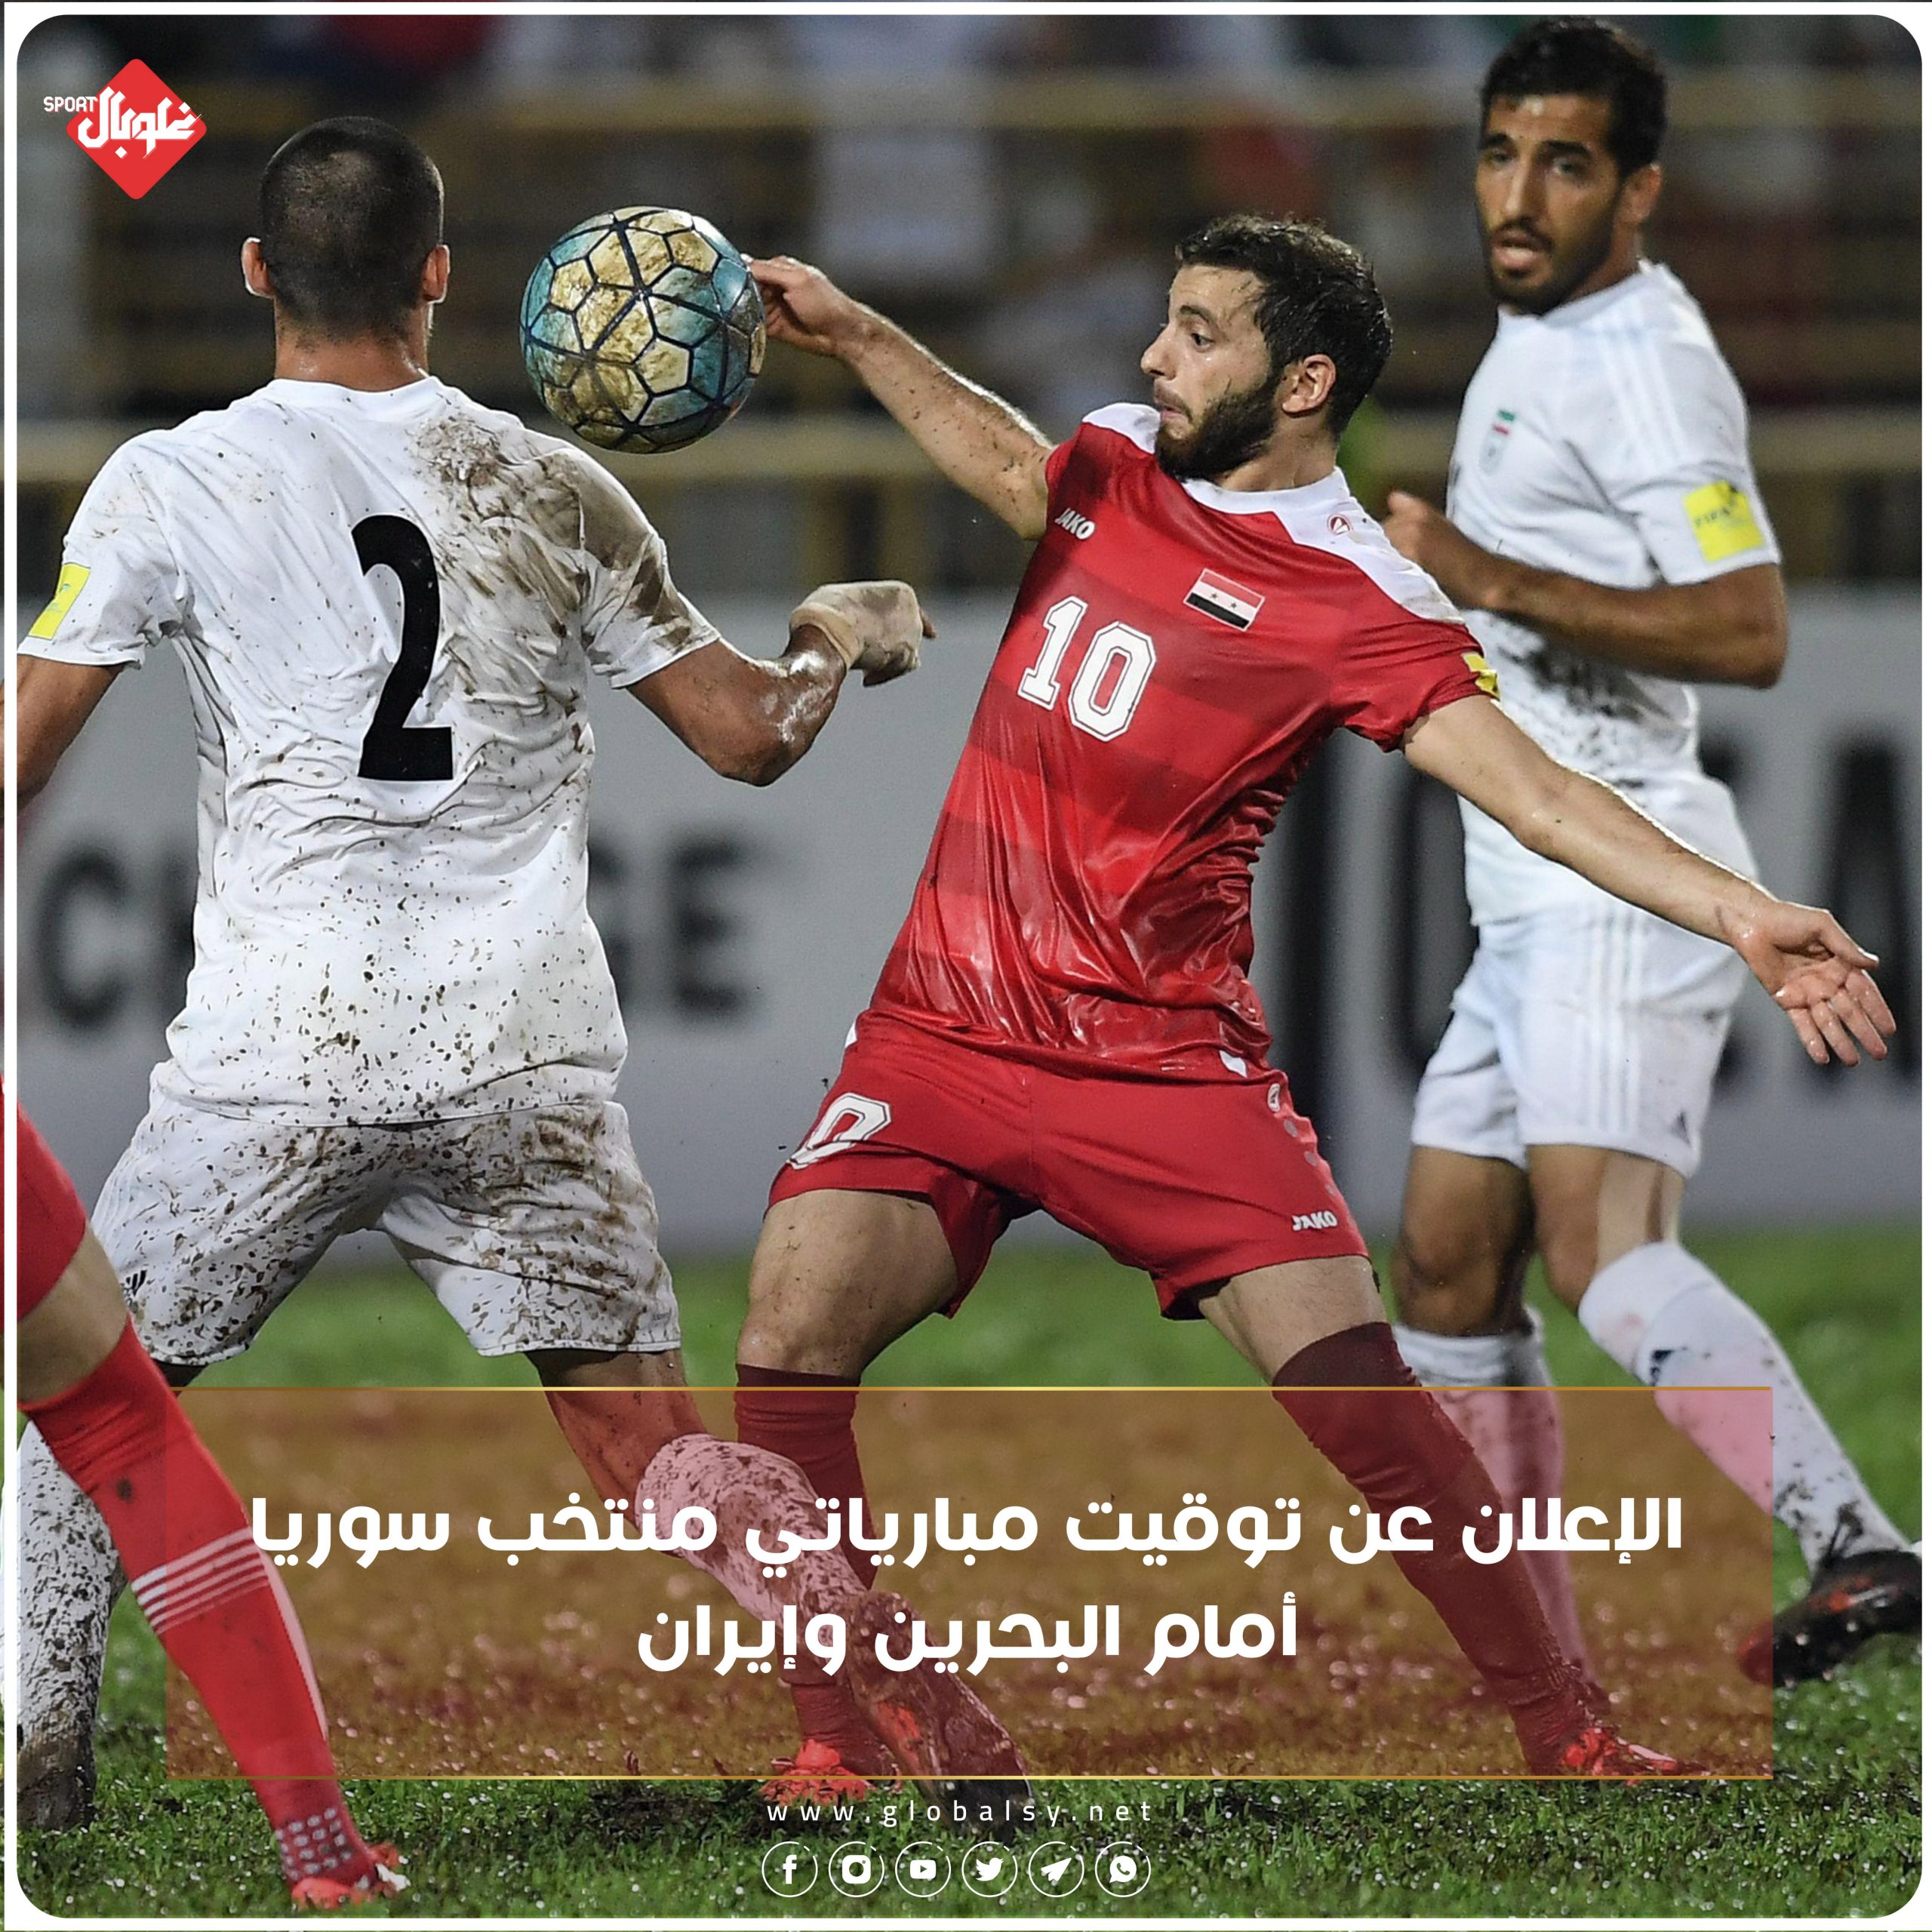 الإعلان عن موعد والقنوات الناقلة لمباريات سورية مع البحرين وإيران